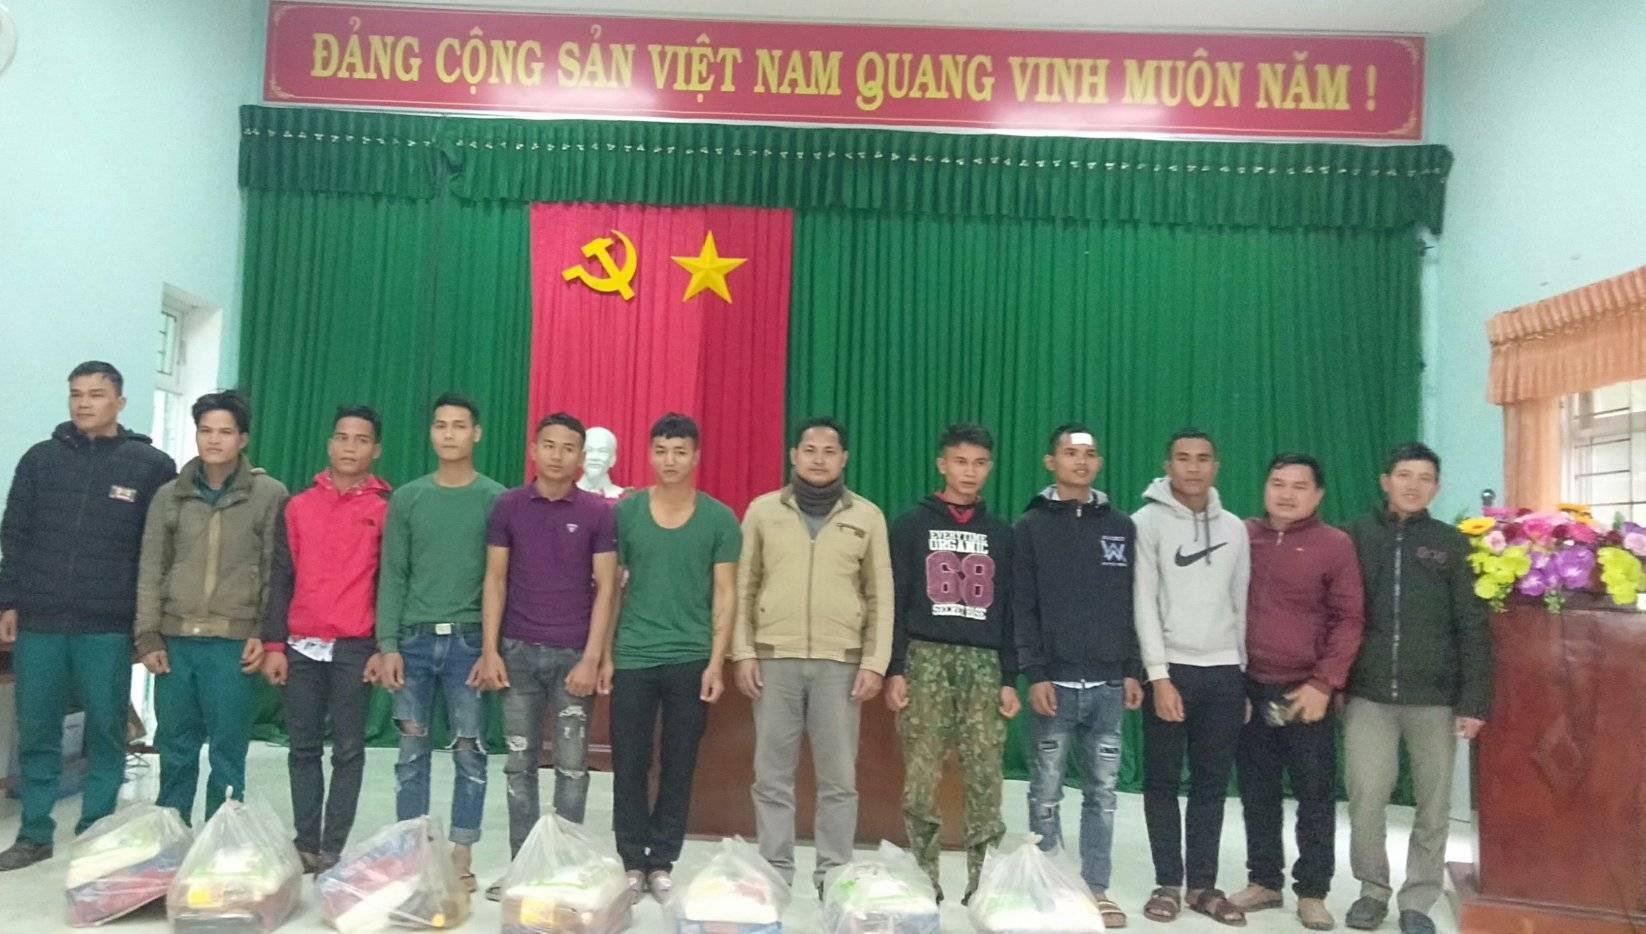 Sơn Màu: Tổ chức gặp mặt thanh niên xuất ngũ trở về địa phương